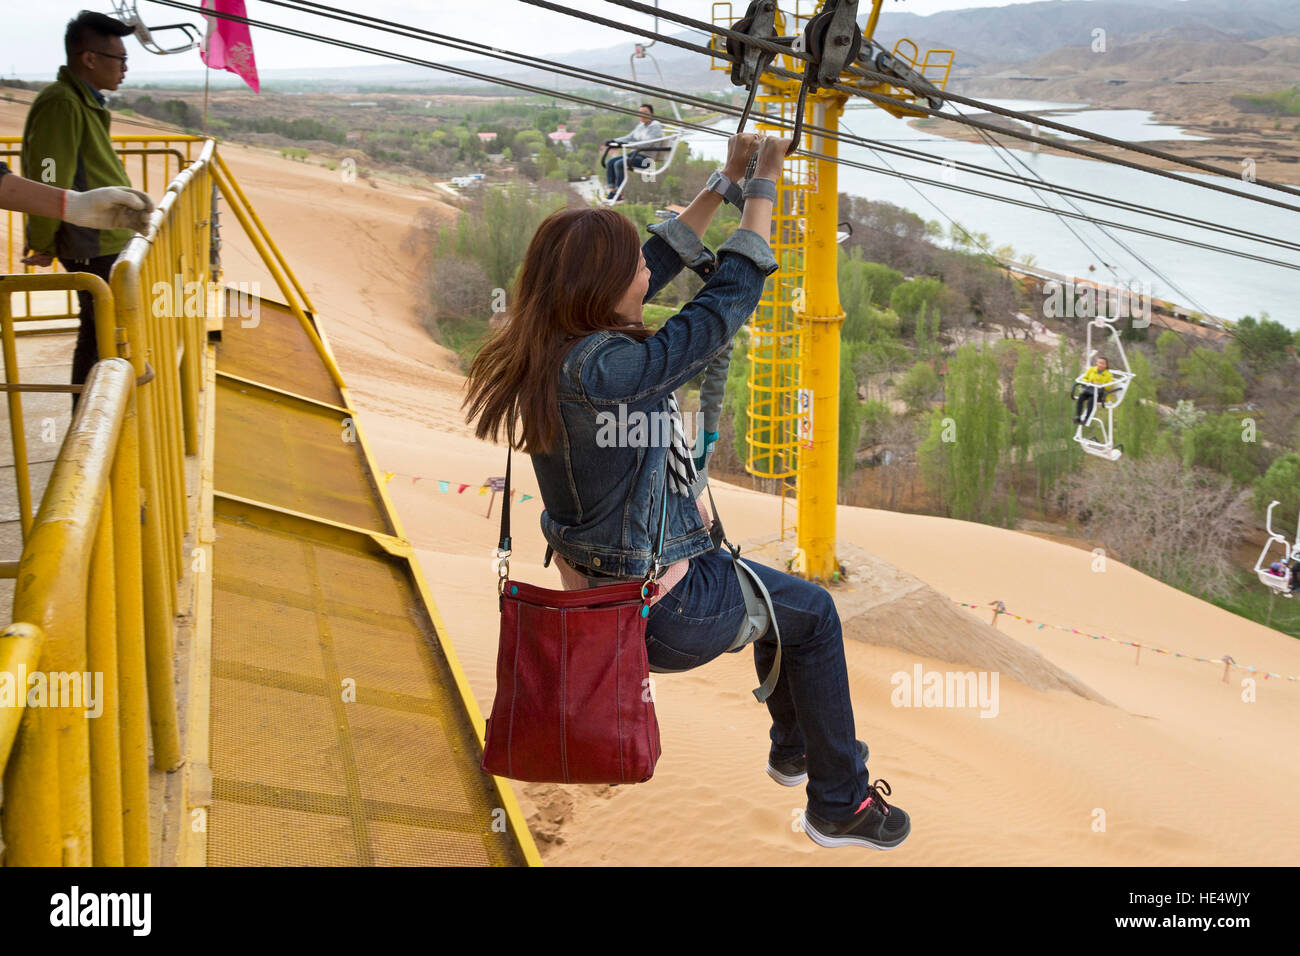 Chinese girl on zip glide, Shapotou Scenic Area, Zhongwei, Ningxia, China Stock Photo